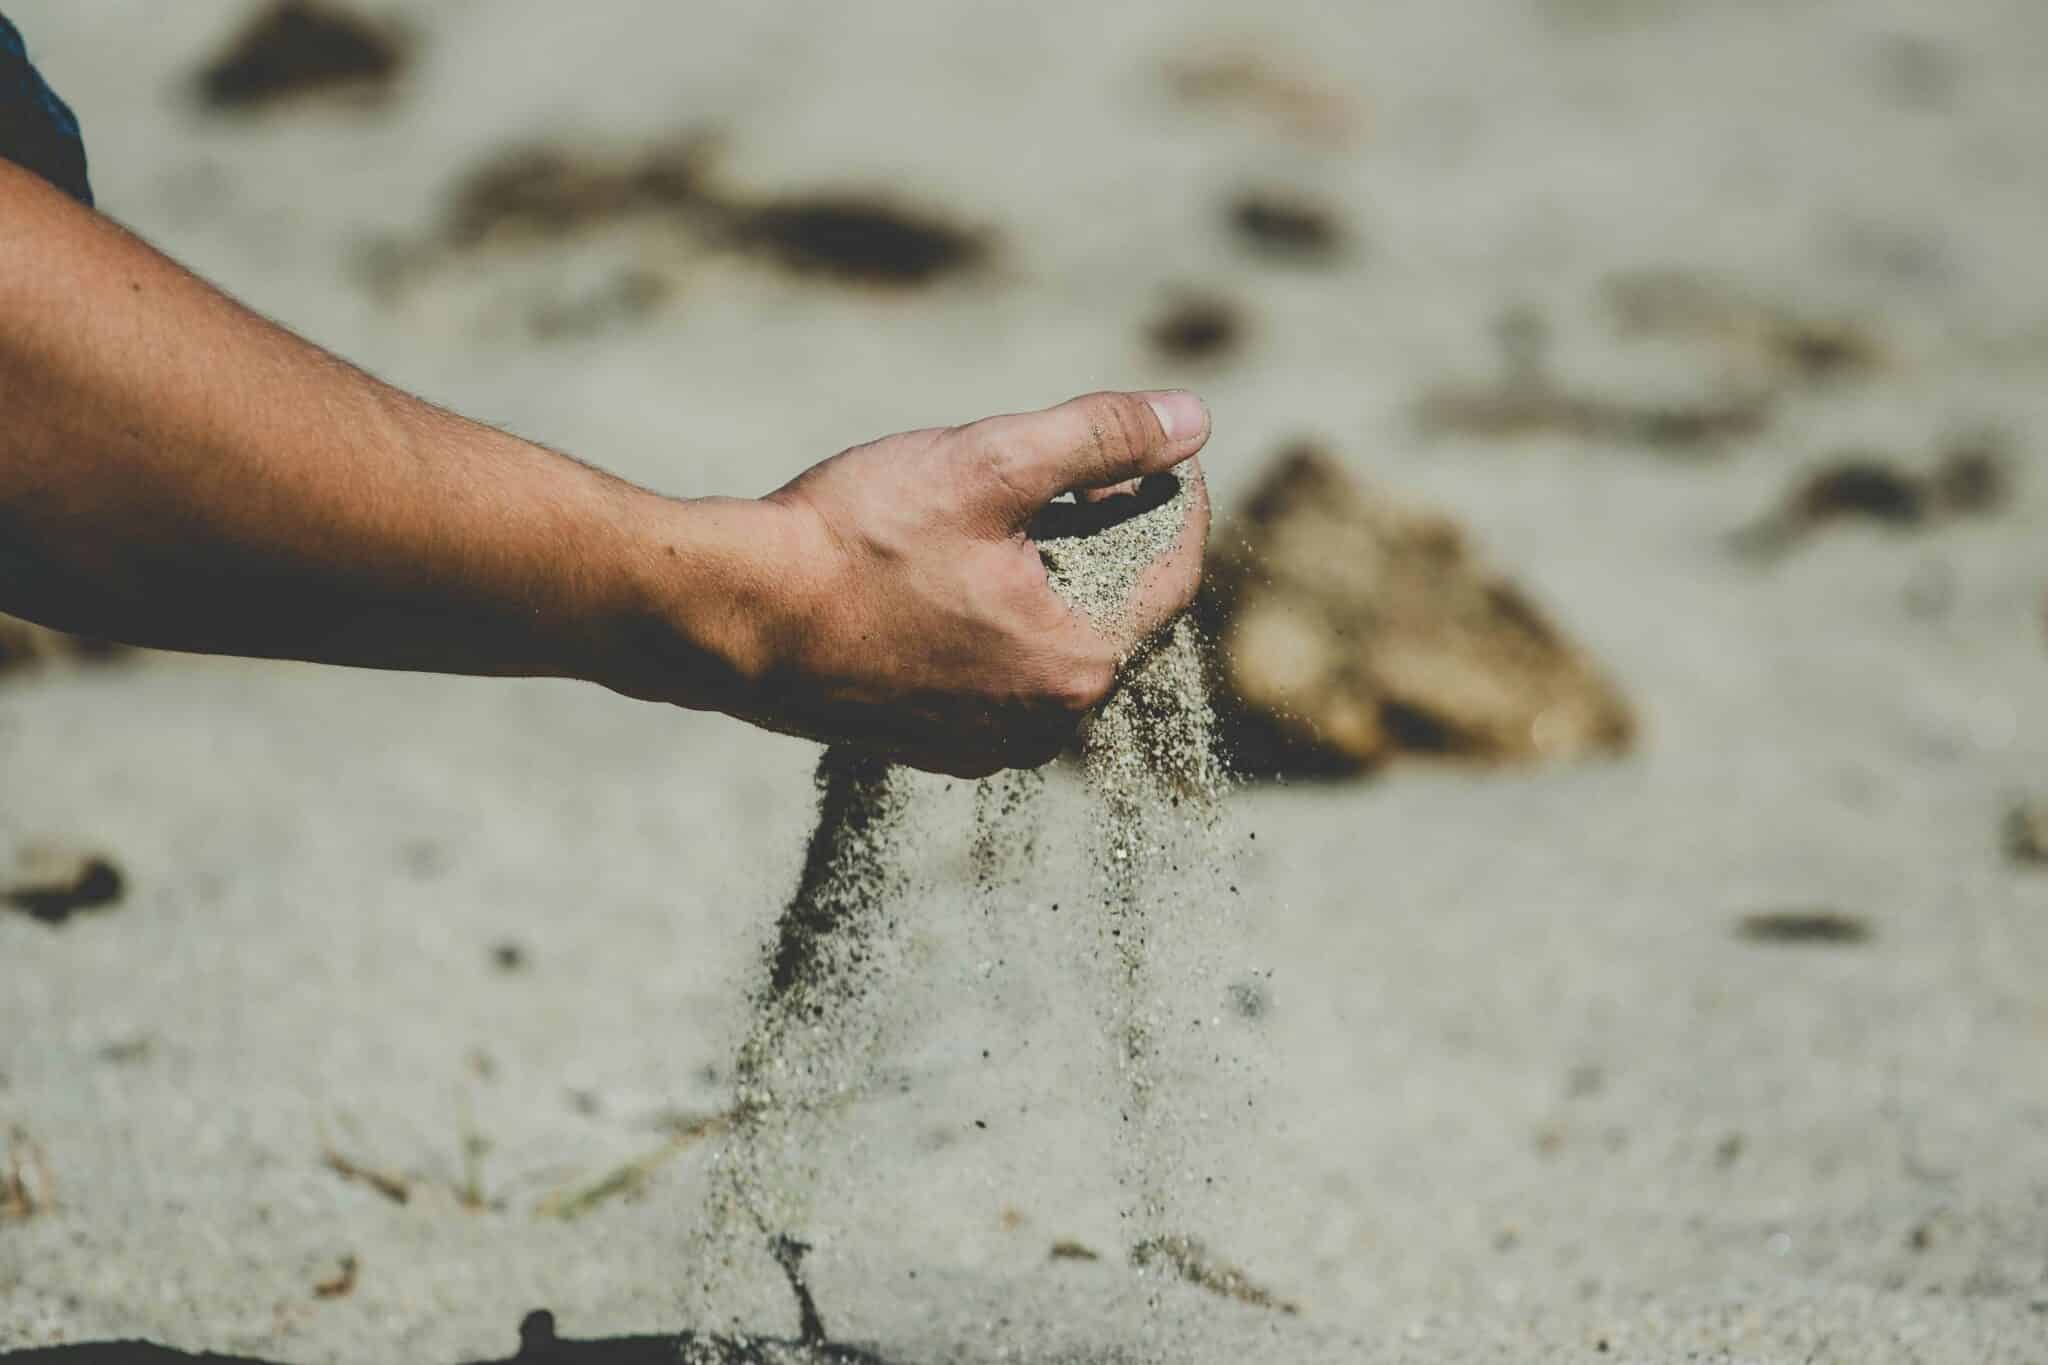 sand in the hand | Photo by Elijah Hiett on Unsplash